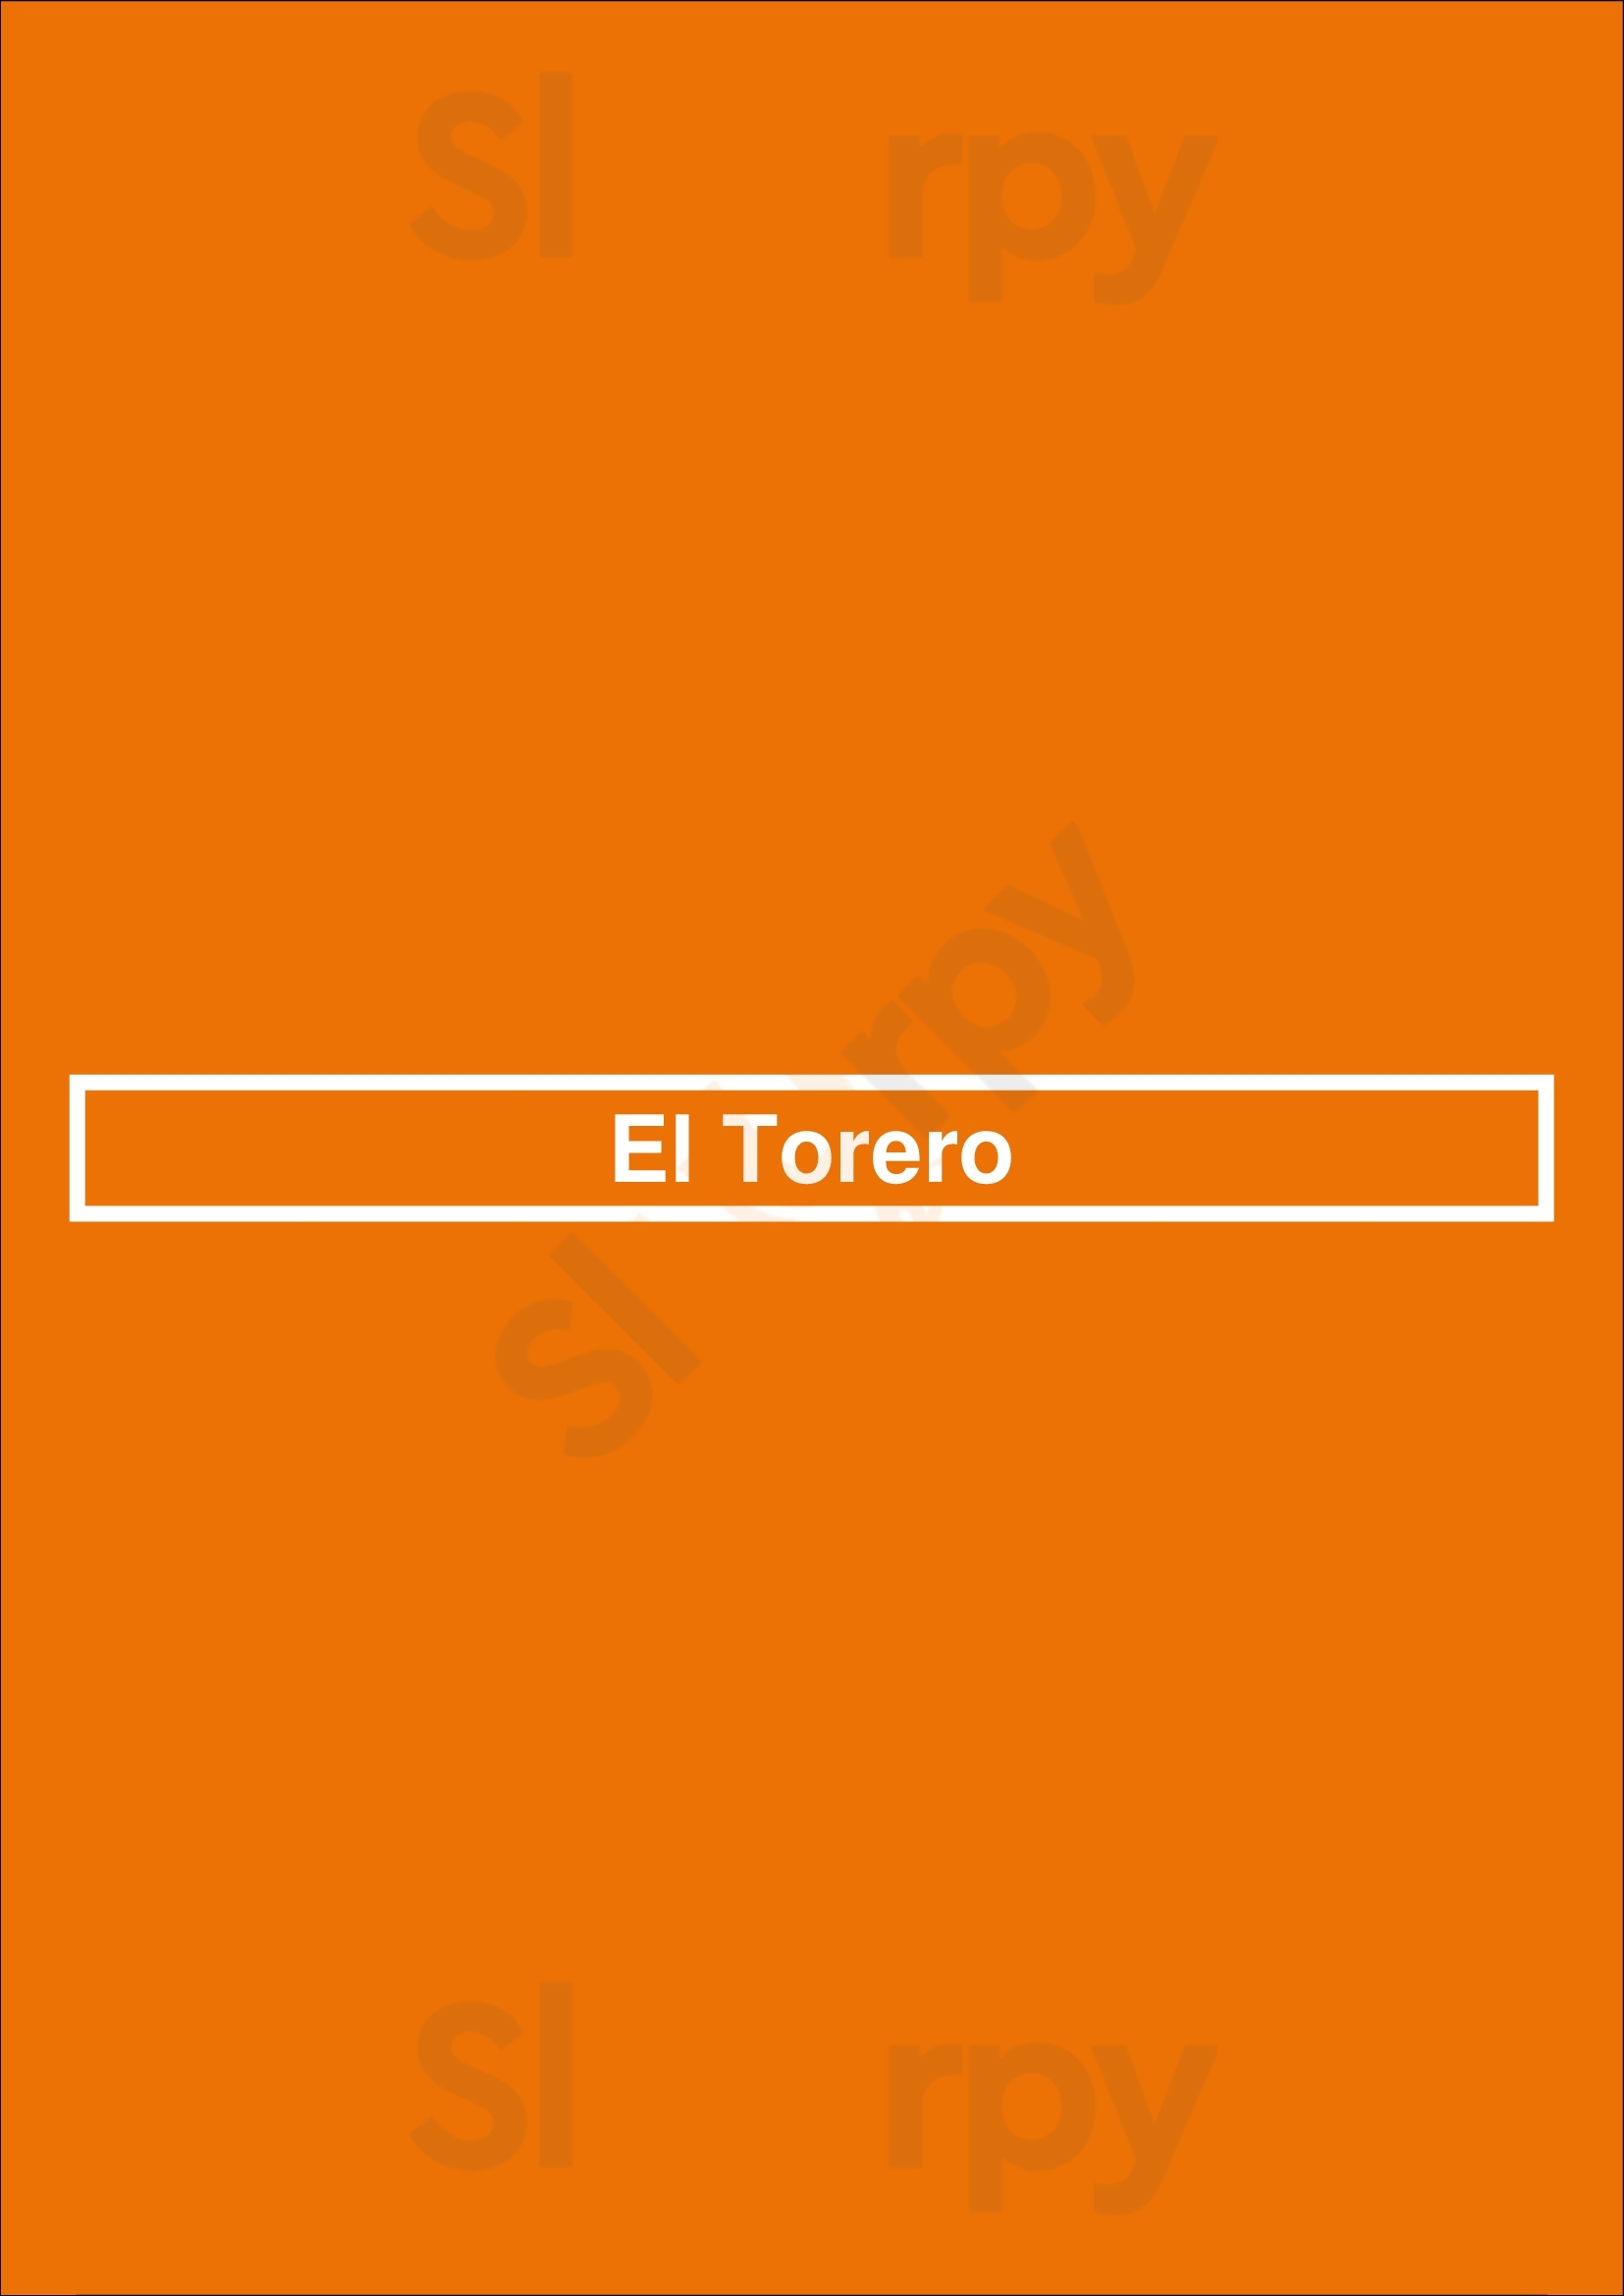 El Torero Kaarst Menu - 1